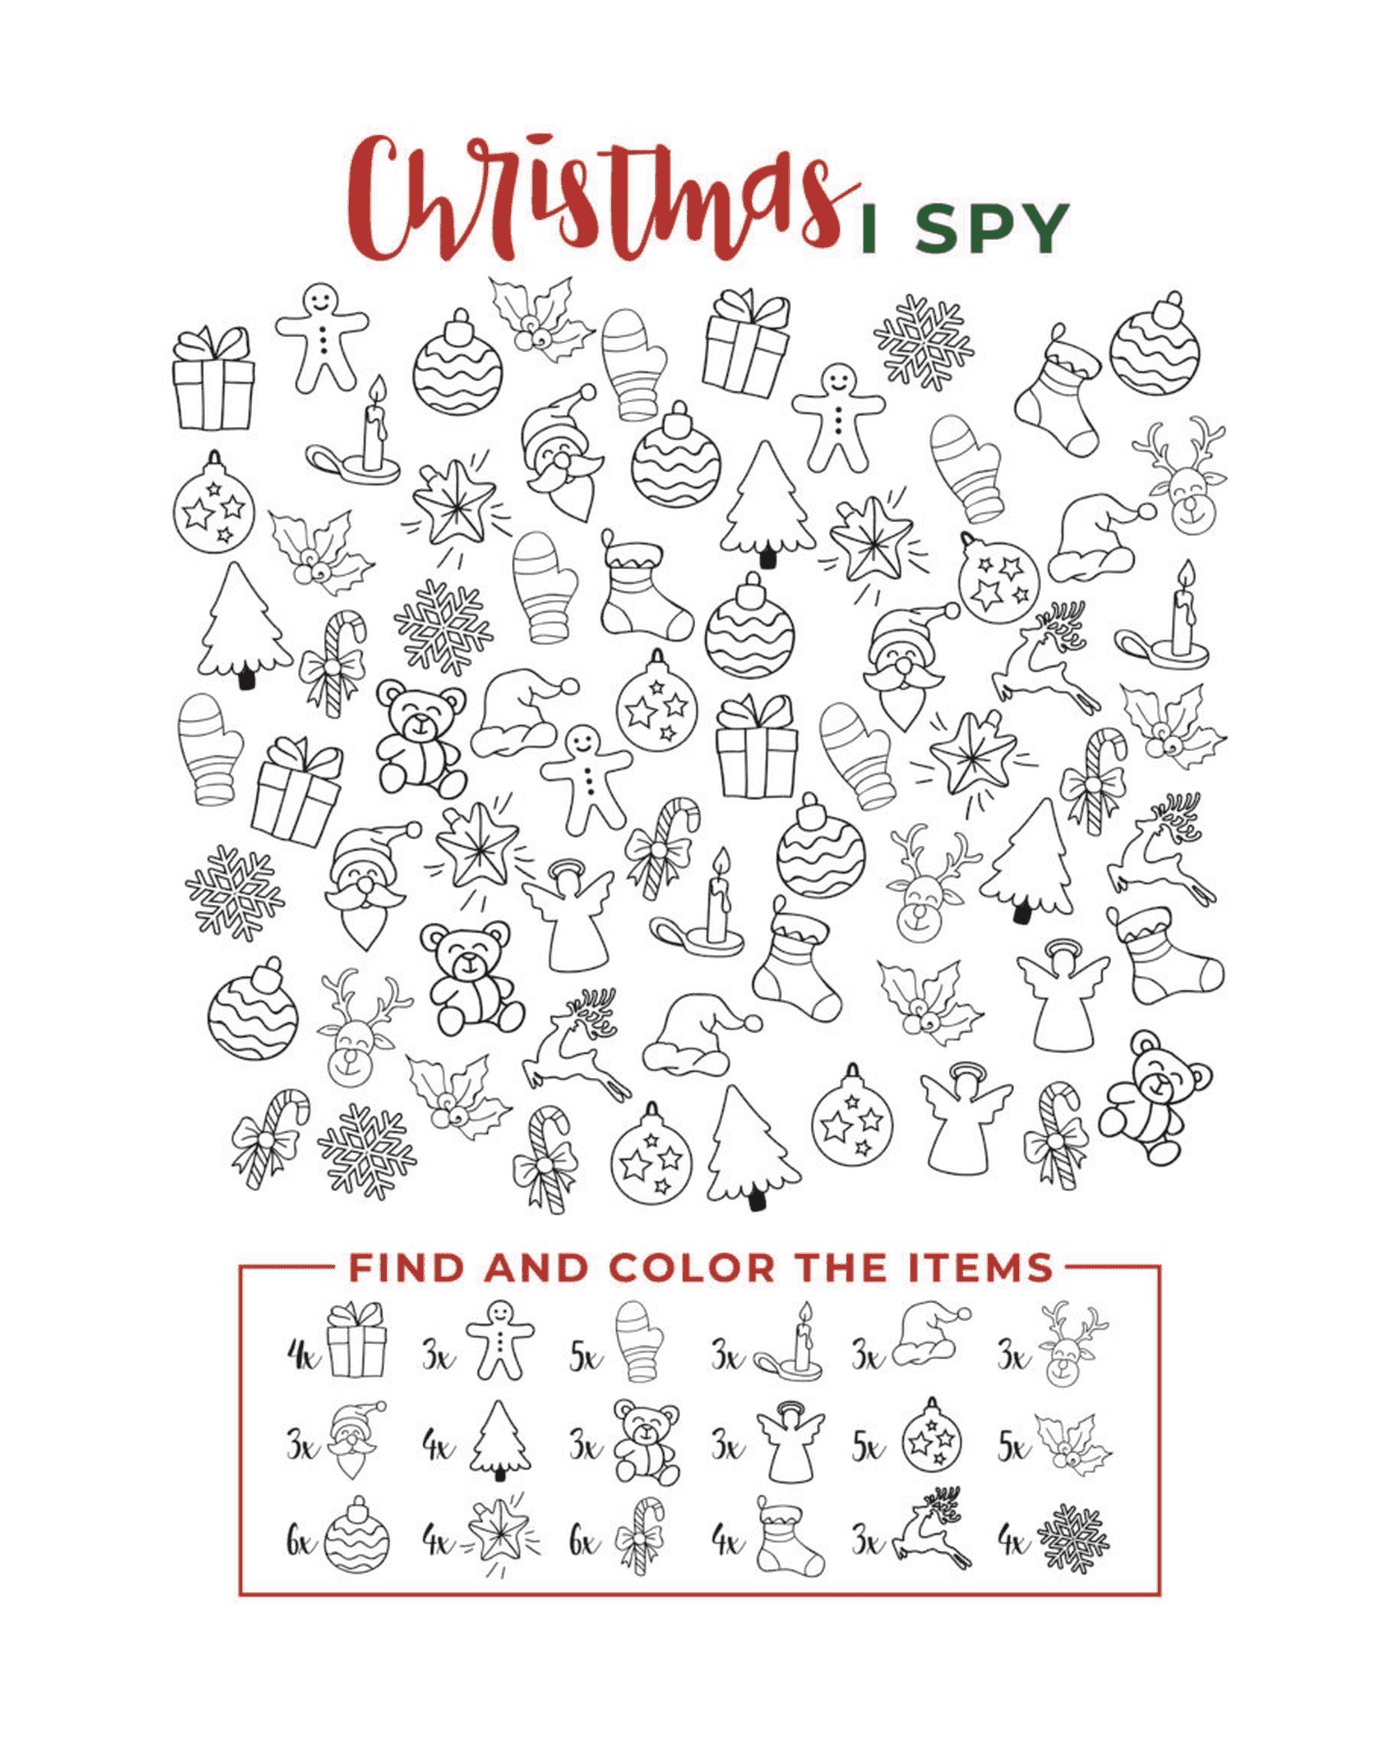  I Spy Christmas Finden und färben Sie die Elemente 